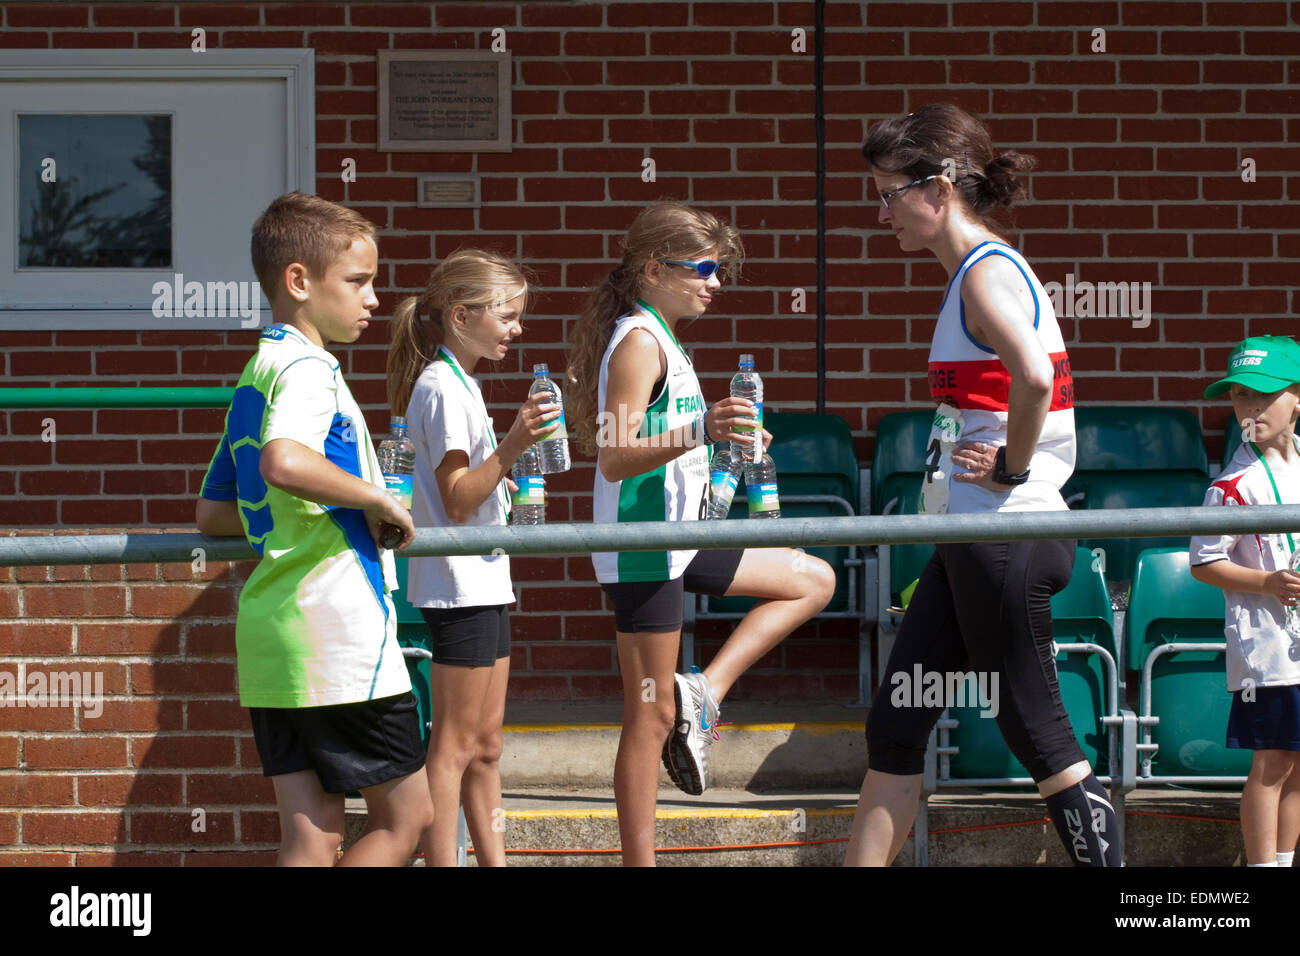 Les enfants offrent de l'eau embouteillée aux coureurs qui viennent juste de terminer une course sur route de 10k Banque D'Images